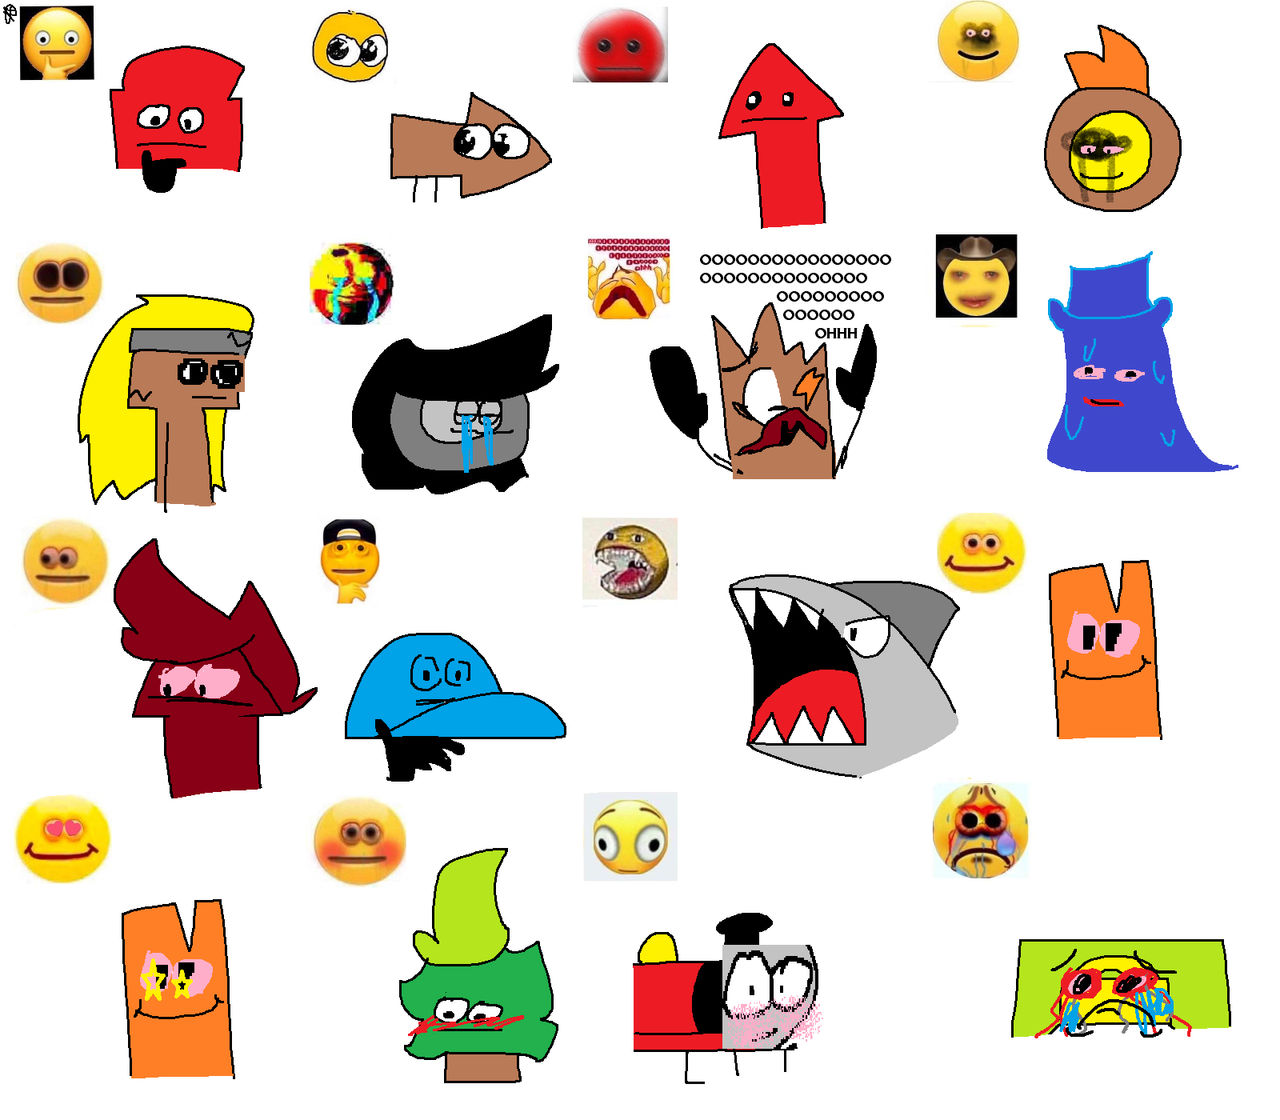 Haha Cursed Emoji by EliteWizard12 on DeviantArt